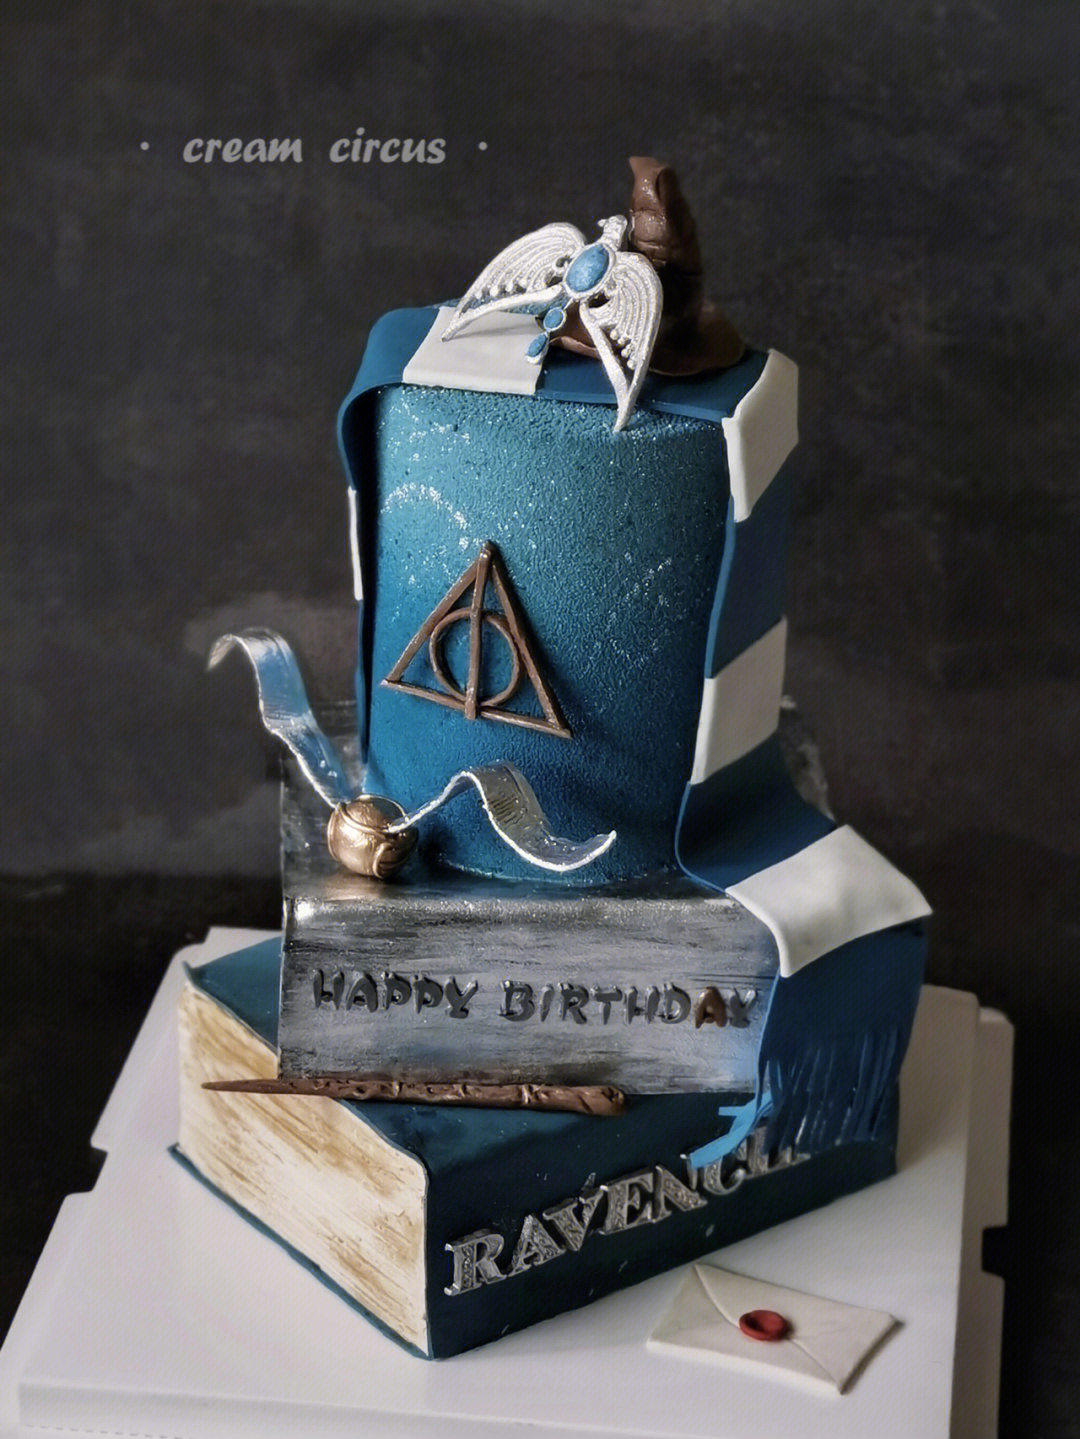 哈利波特生日蛋糕截图图片